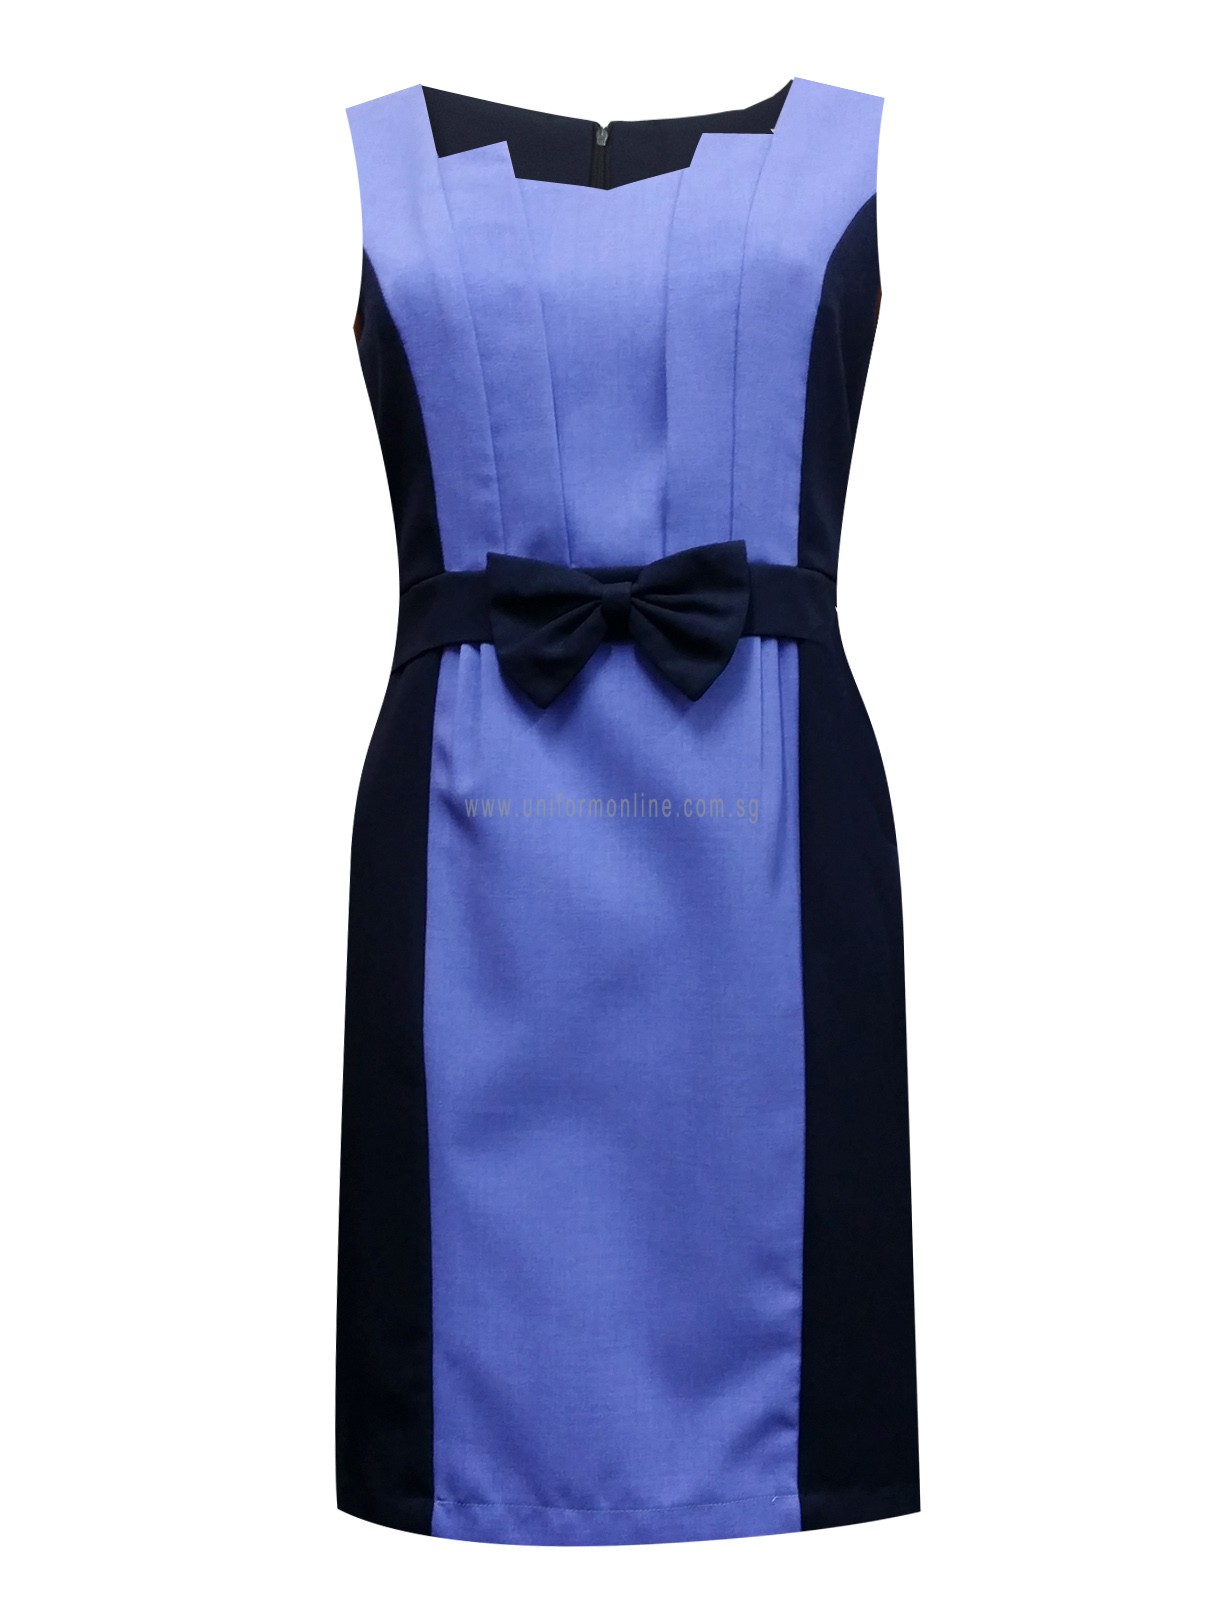 BKKCC001 – Office Purple/Navy Dress with detachable belt – Uniform Online